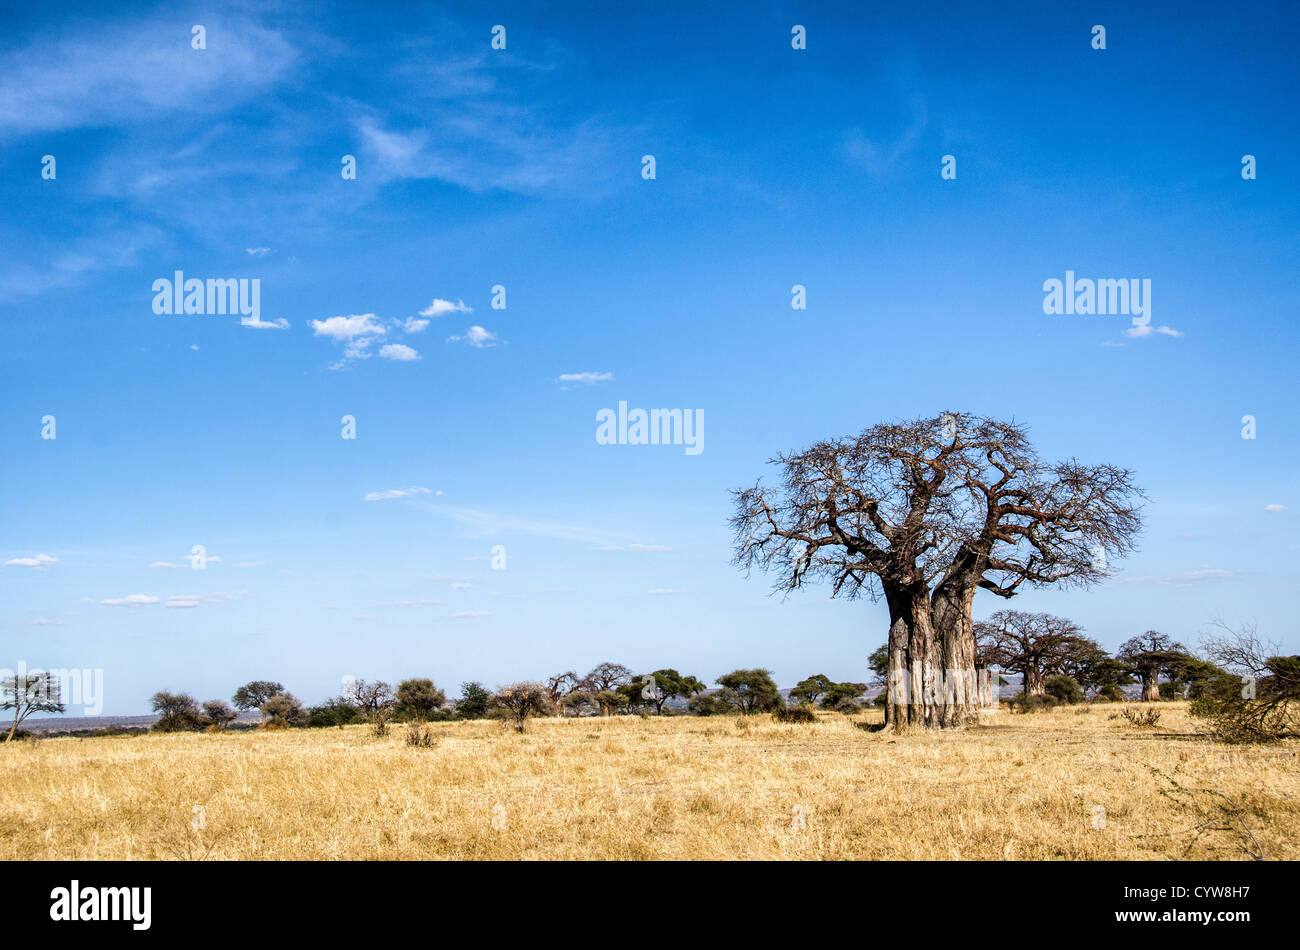 TARANGIRE-NATIONALPARK, Tansania - Im Tarangire-Nationalpark im Norden Tansanias, unweit des Ngorongoro-Kraters und der Serengeti, ragt Ein Baobab-Baum vom blauen Himmel hervor. Der Ngorongoro-Krater, der zum UNESCO-Weltkulturerbe gehört, ist ein riesiger vulkanischer Krater im Norden Tansanias. Sie wurde vor 2-3 Millionen Jahren gegründet, hat einen Durchmesser von etwa 20 Kilometern und ist die Heimat vielfältiger Tiere, einschließlich der „Big Five“-Wildtiere. Das Ngorongoro Conservation Area, das von den Maasai bewohnt wird, enthält auch bedeutende archäologische Stätten wie die Olduvai-Schlucht und Laetoli, die Einblicke bieten Stockfoto